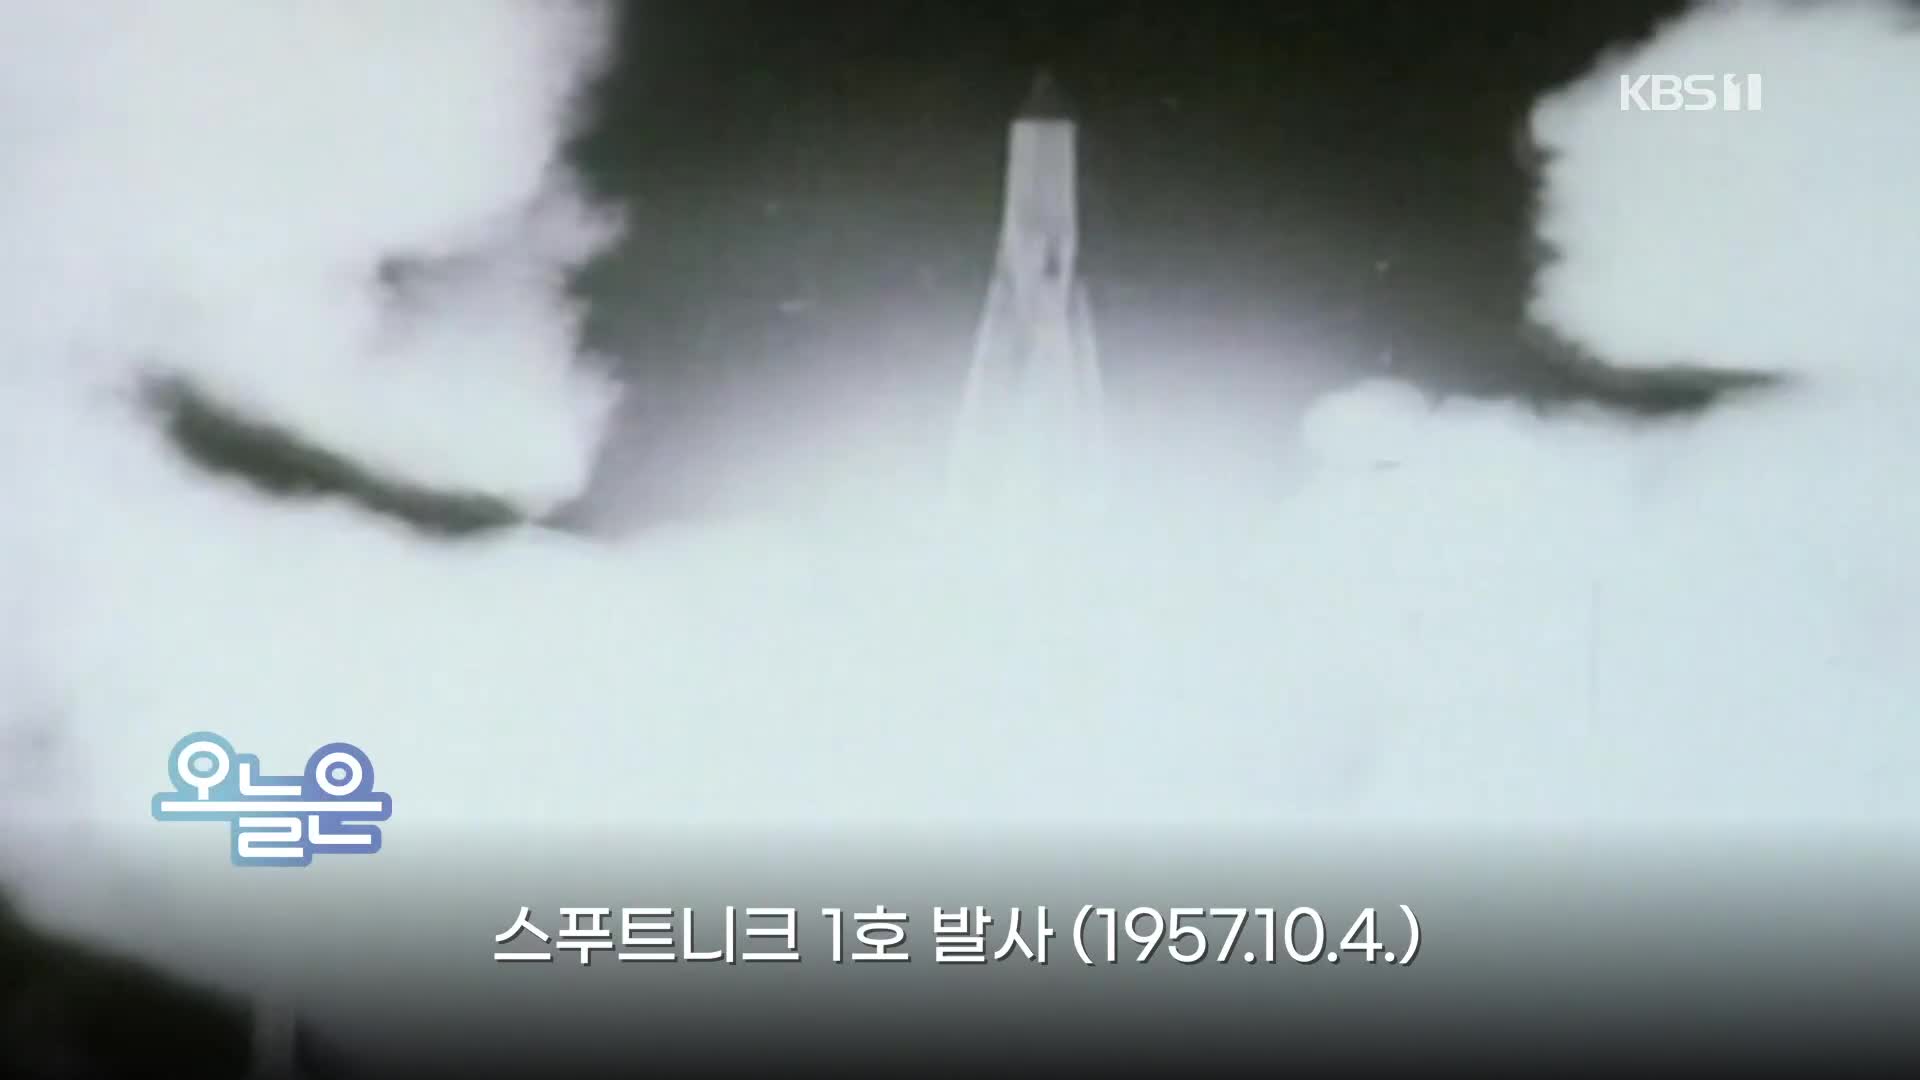 [오늘은] 스푸트니크 1호 발사 (1957.10.4.)